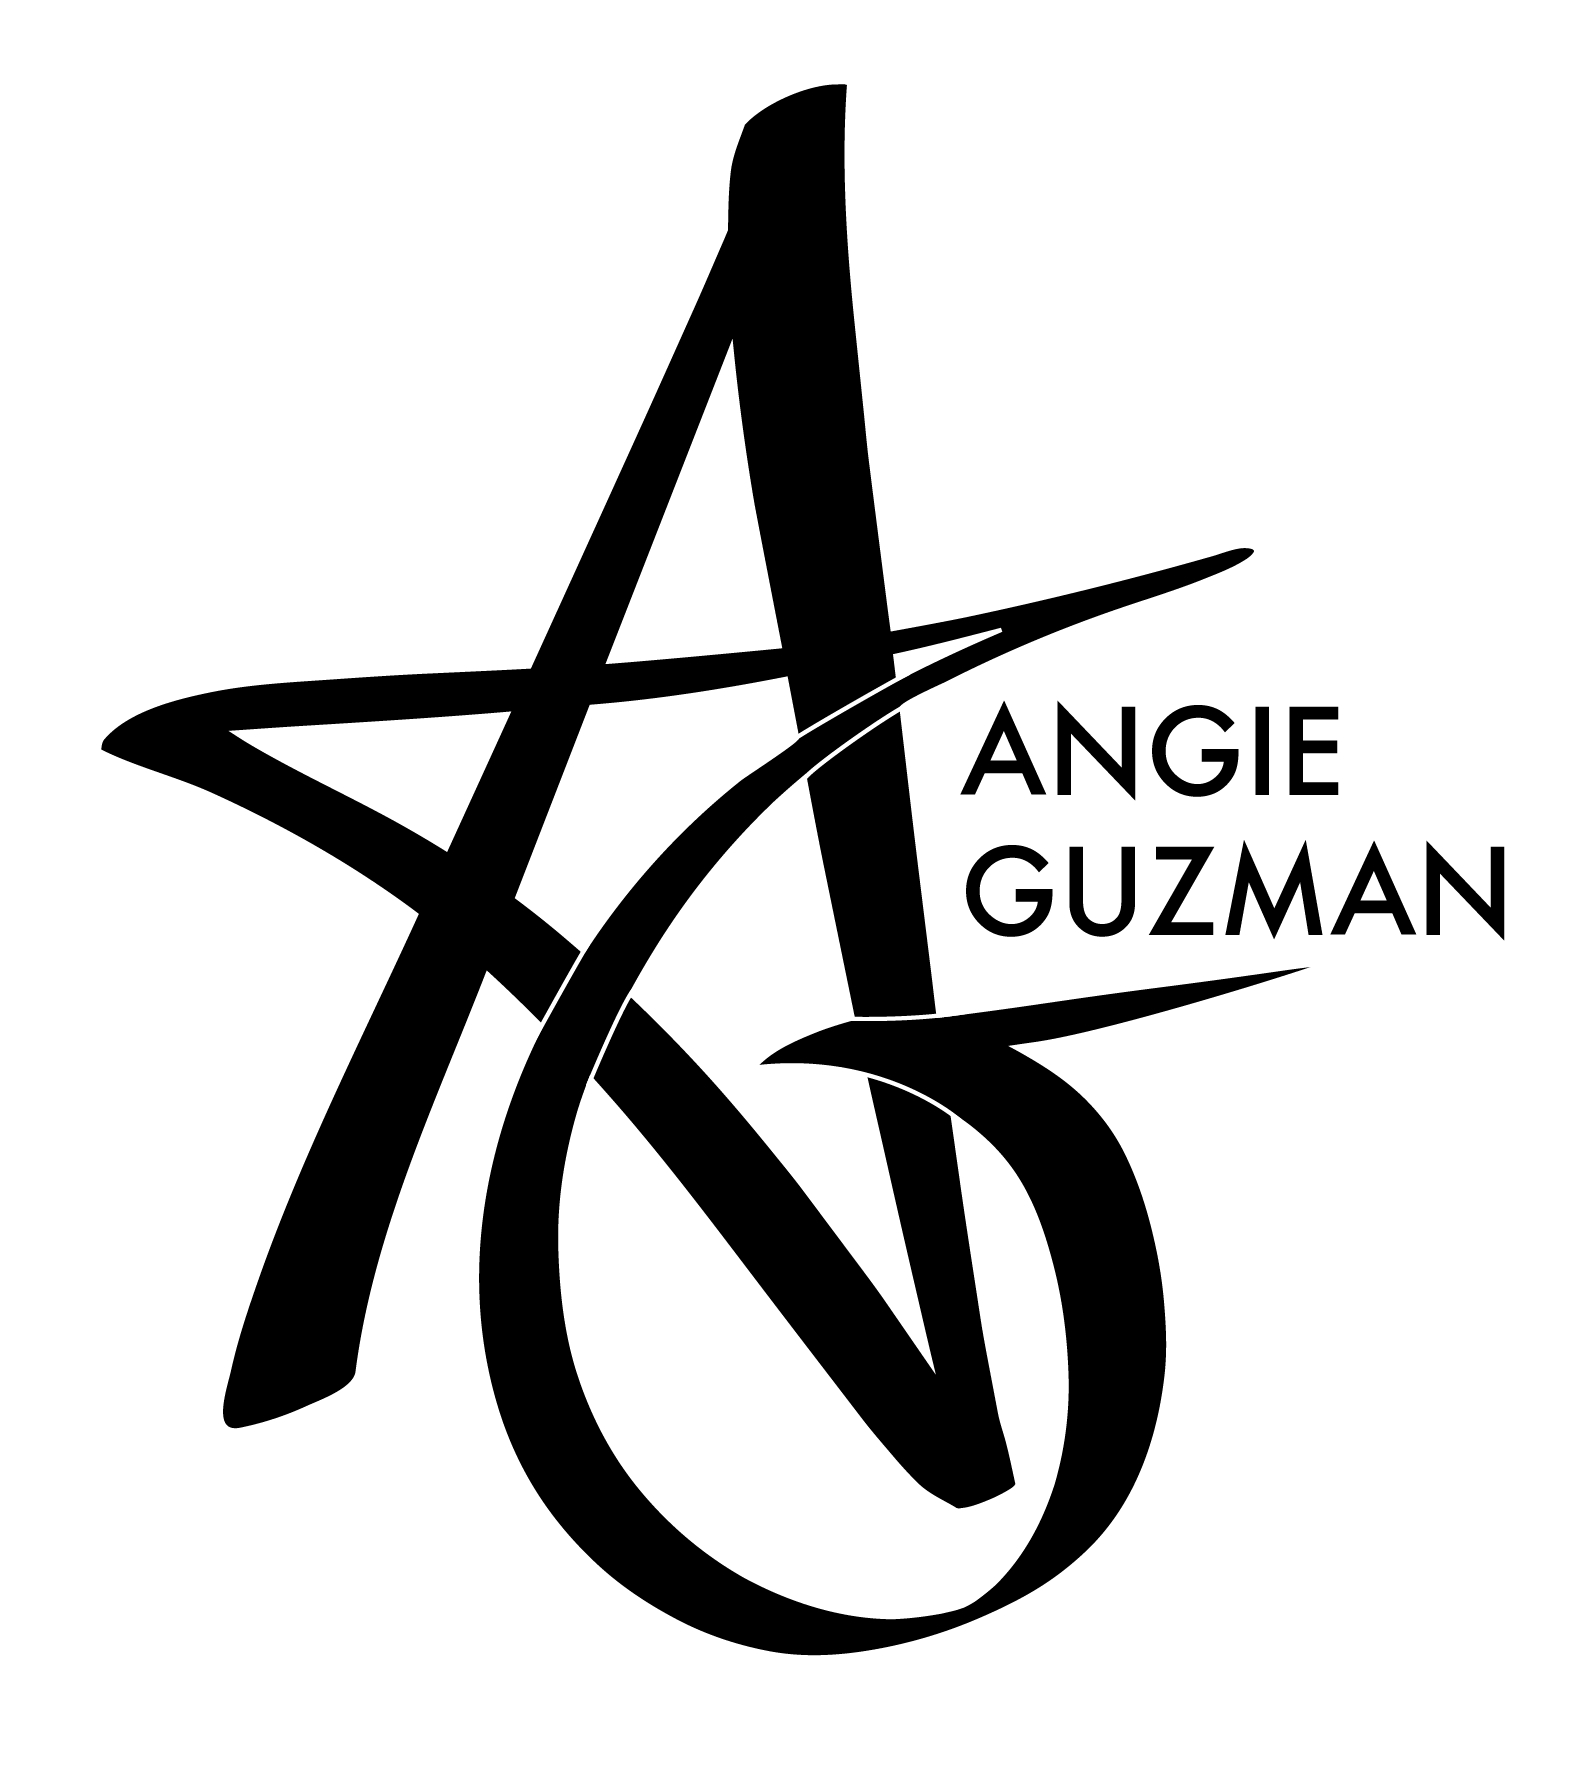 Angie Guzman